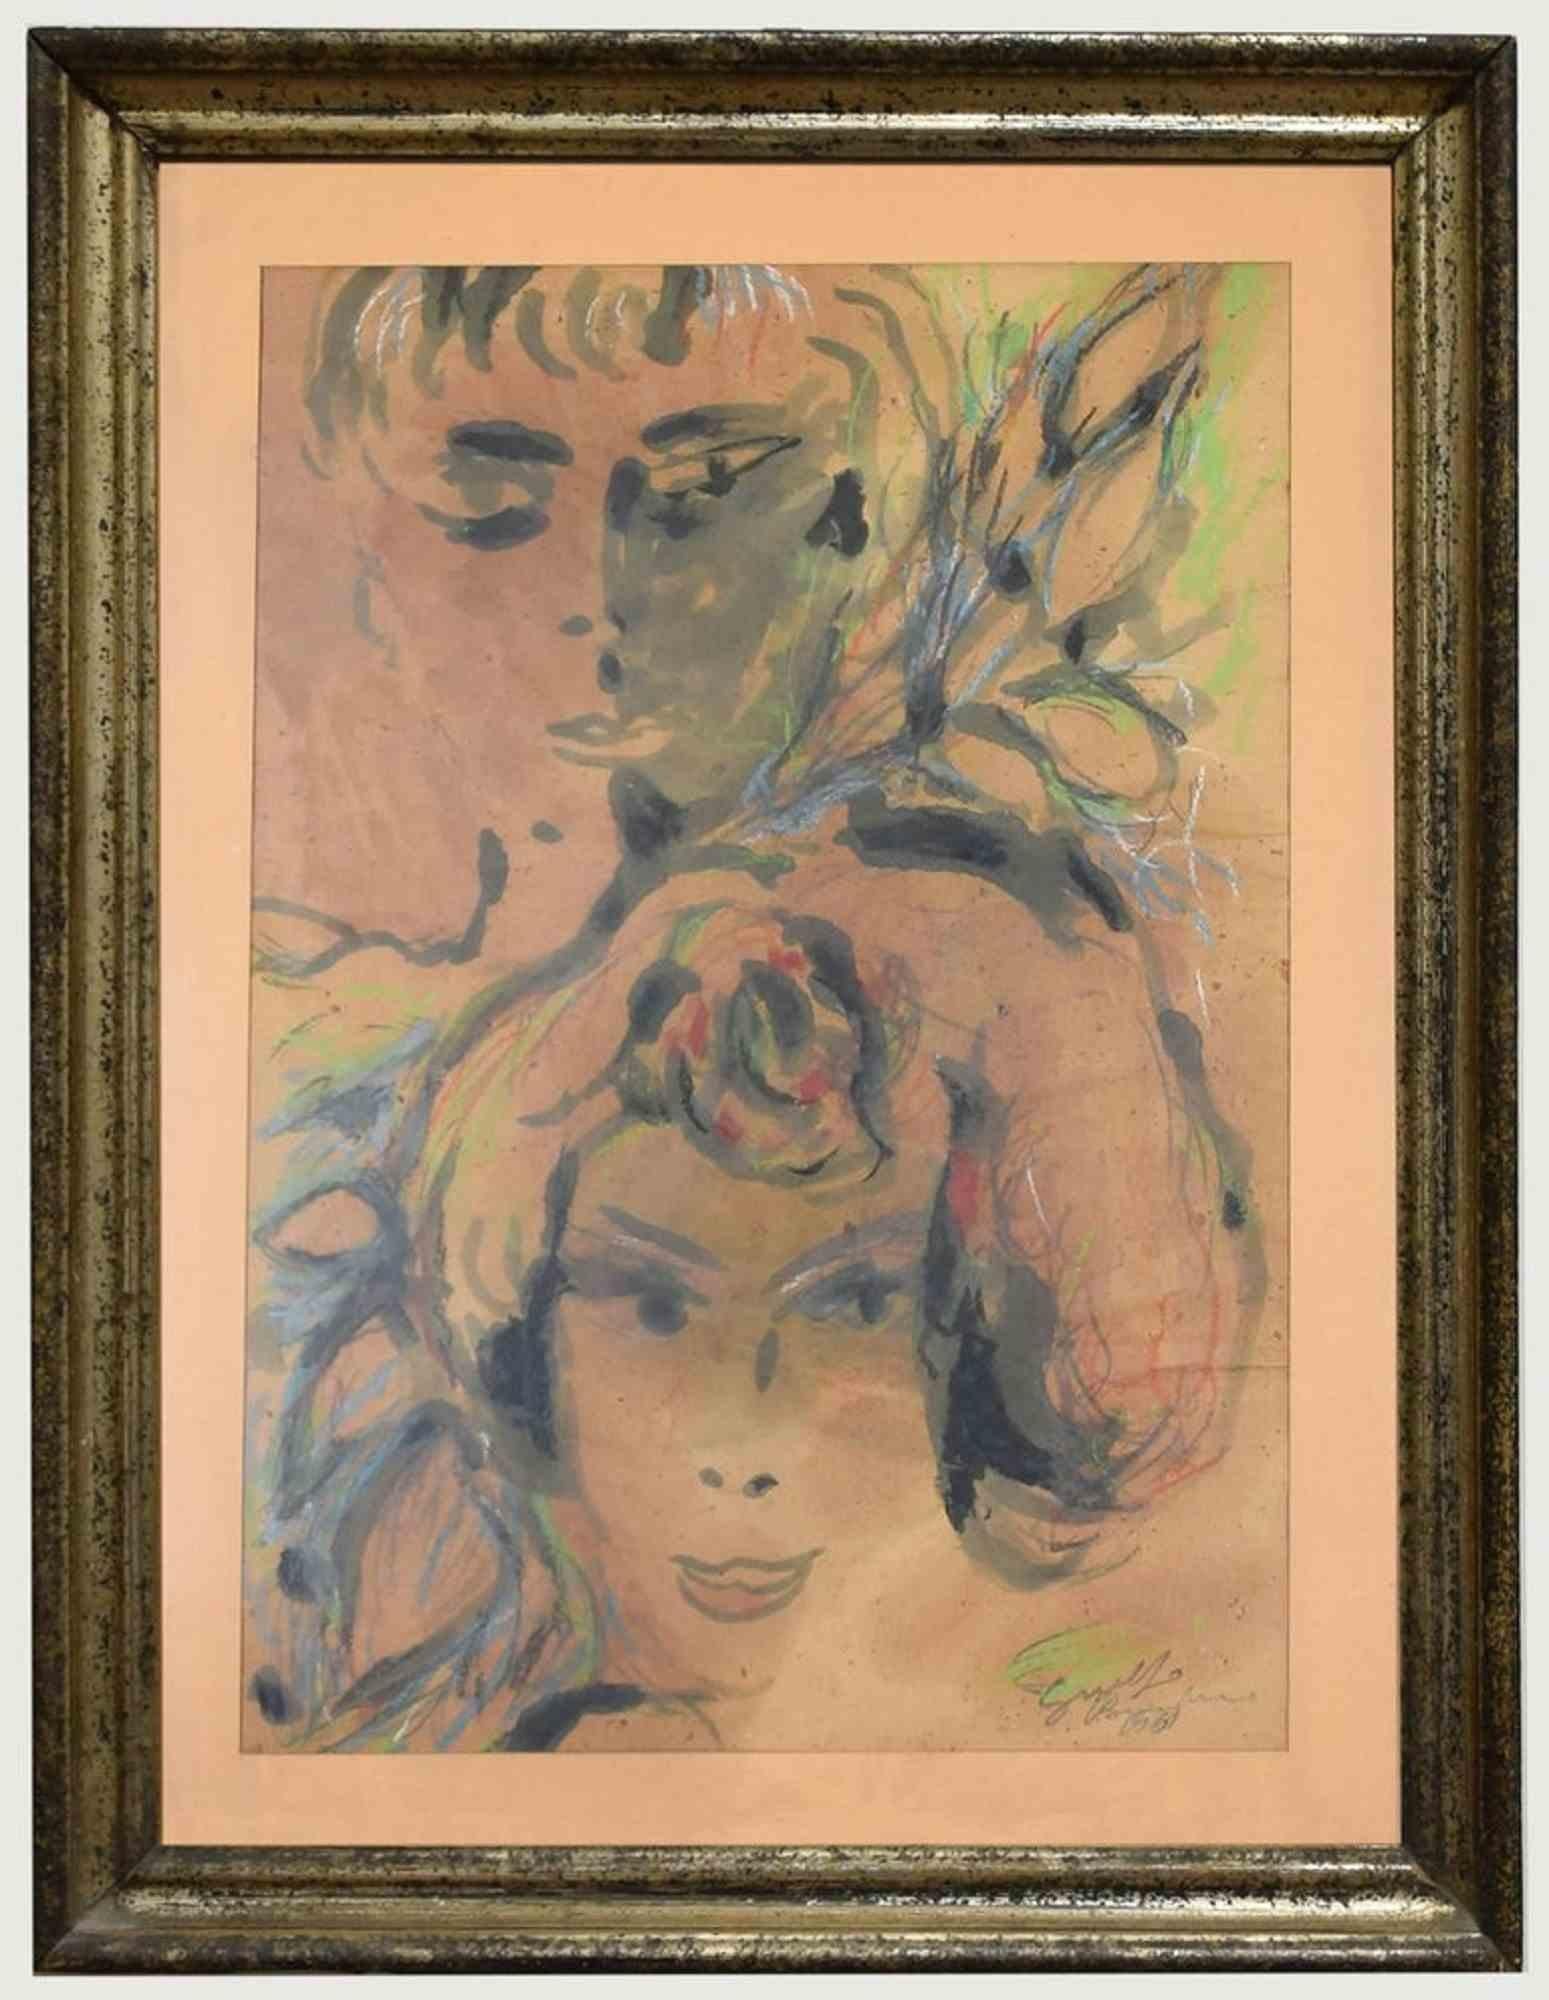 Femmes est un dessin original à l'aquarelle réalisé par Guelfo Bianchini en 1961.

L'œuvre est signée à la main et signée par l'artiste.

Cadre inclus : 68.5 x 3.5 x 51.5  cm

Guelfo Bianchini Ancône 1937 - Rome 1977. Né à Fabriano en 1937, il vit